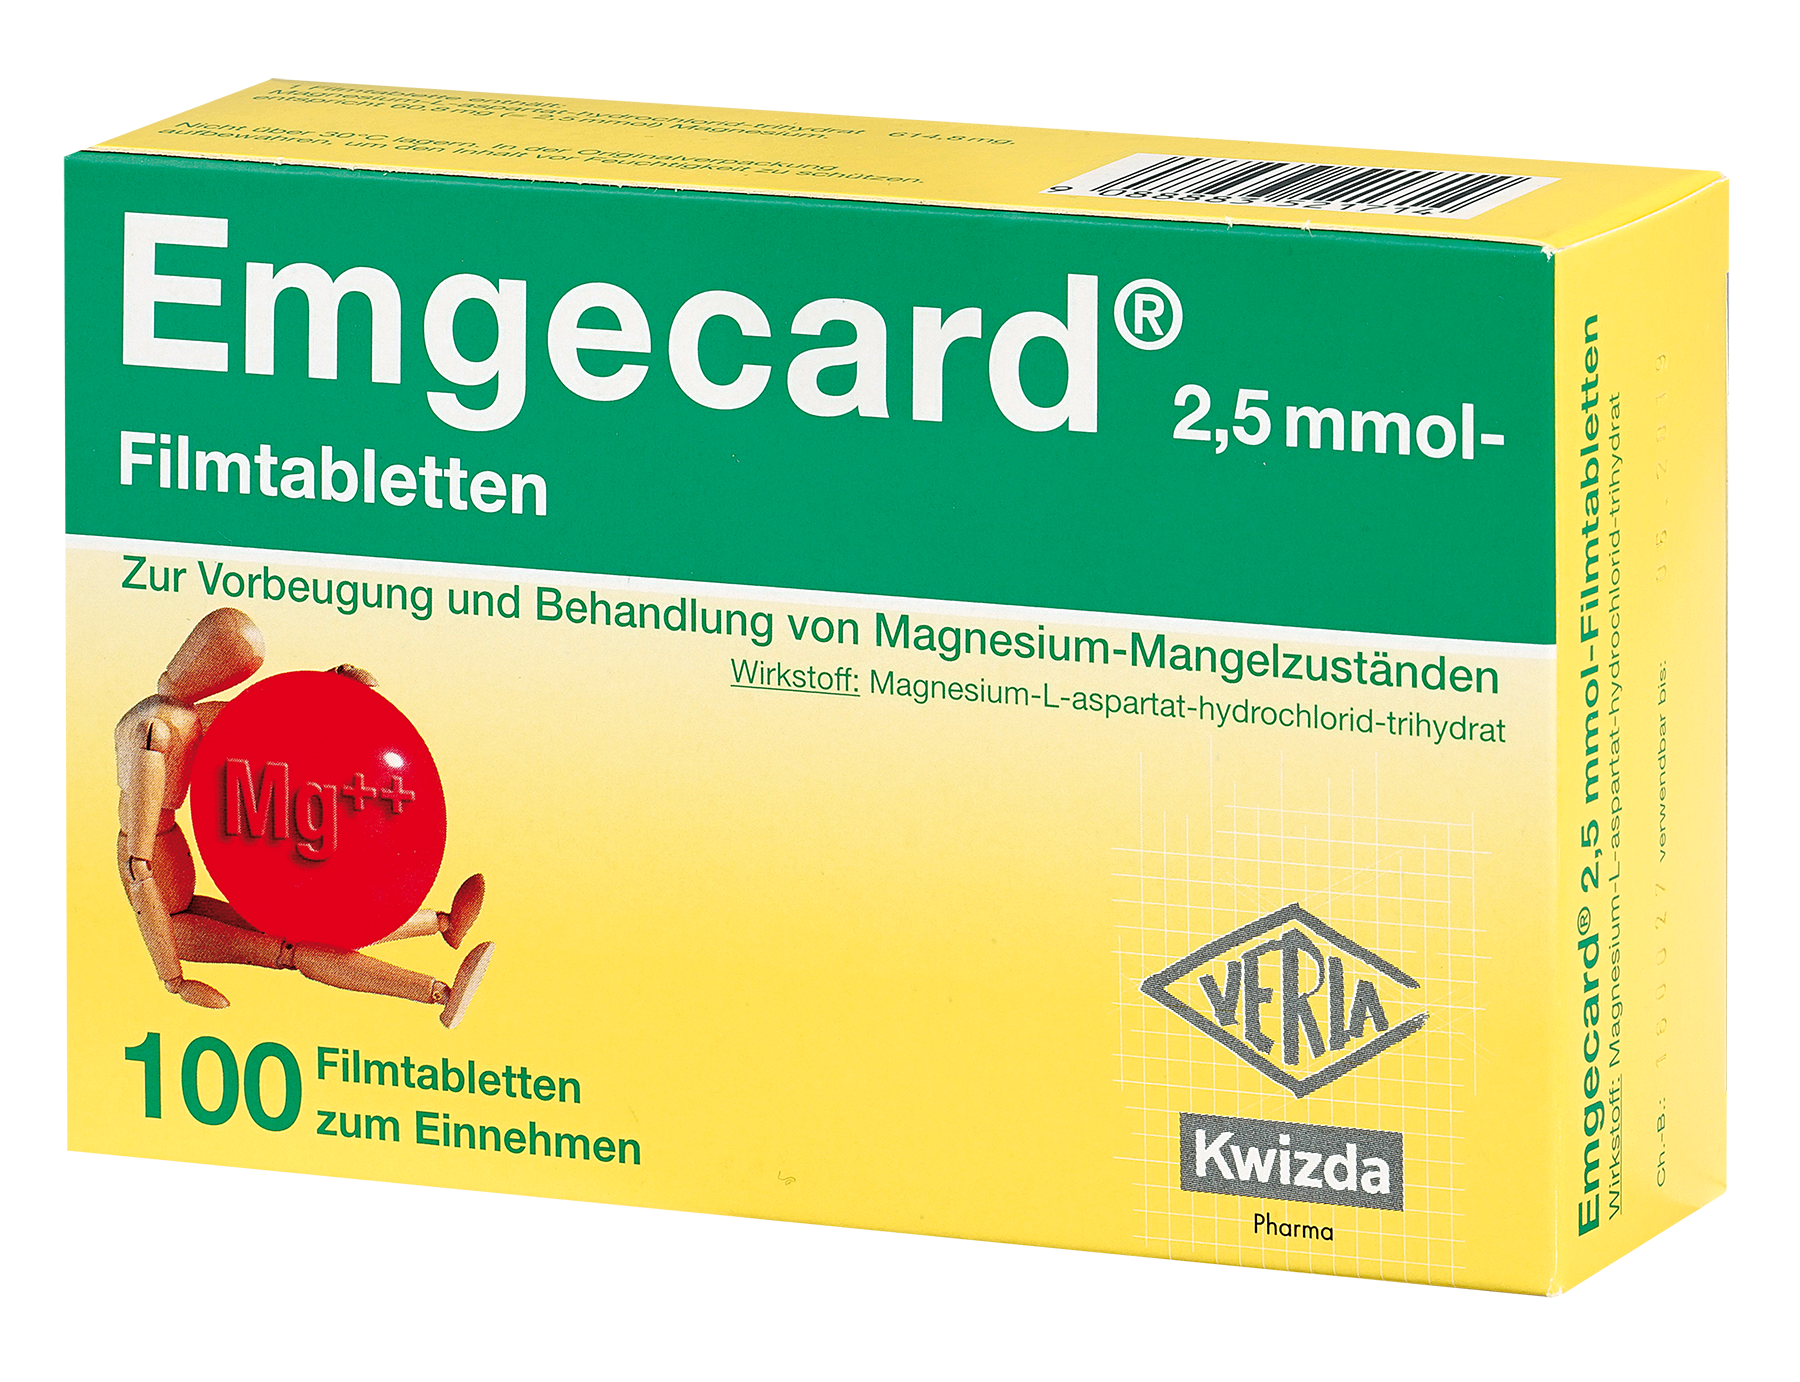 Emgecard 2,5 mmol - Filmtabletten